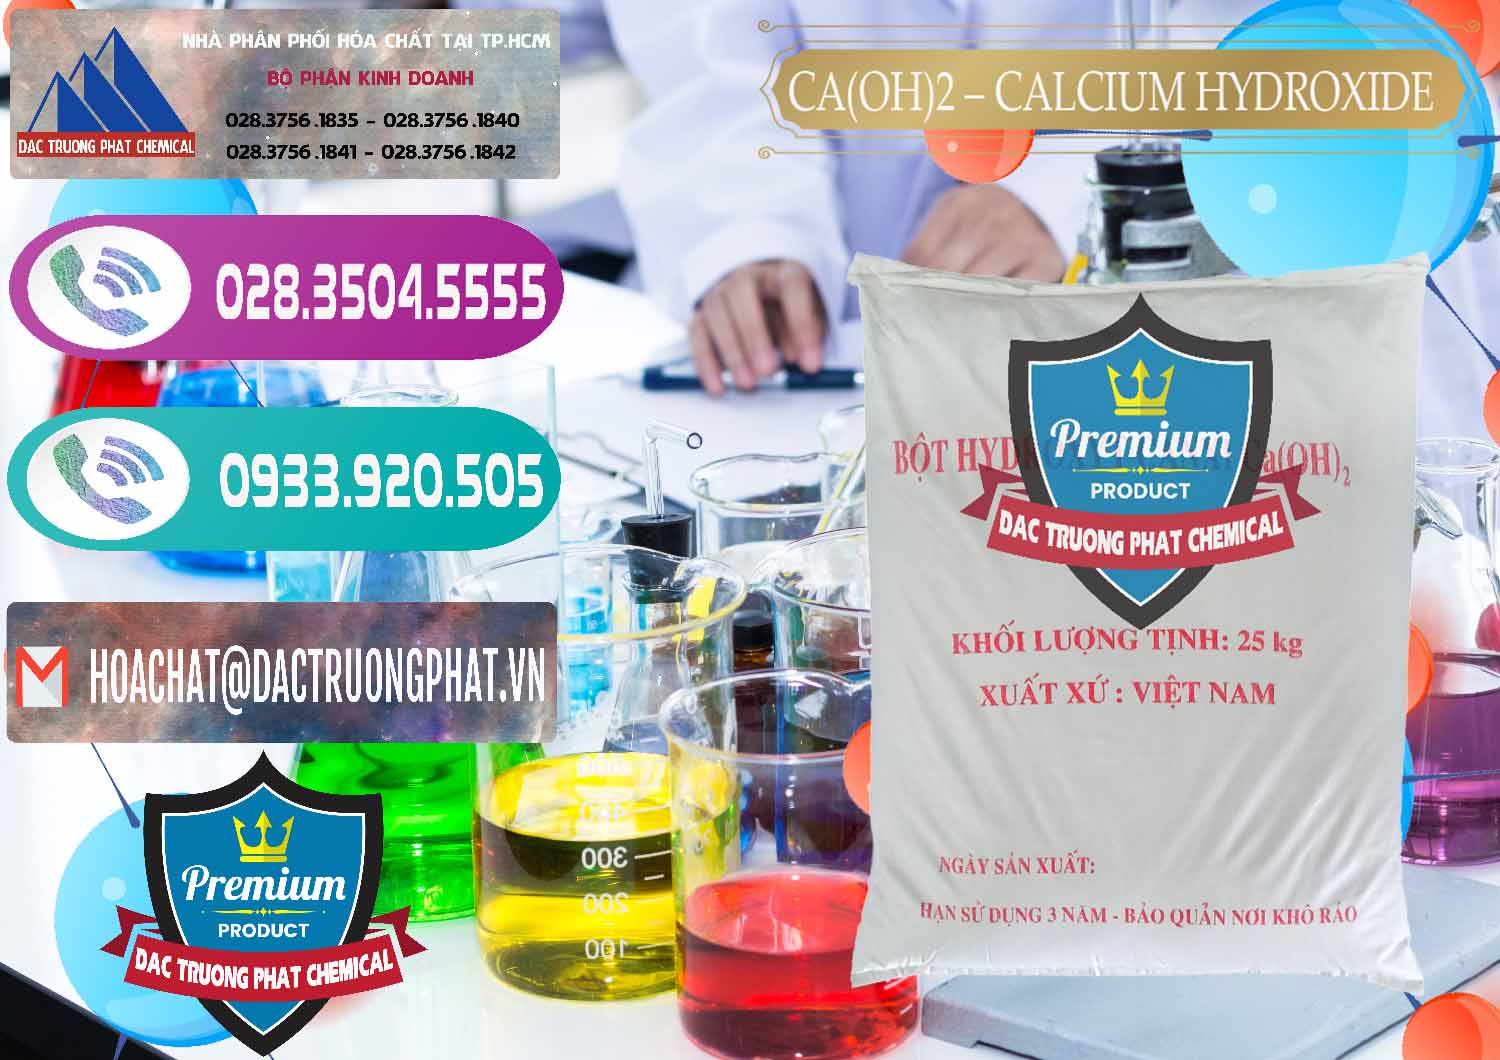 Công ty chuyên cung cấp ( kinh doanh ) Ca(OH)2 - Calcium Hydroxide Việt Nam - 0186 - Cty chuyên bán ( cung cấp ) hóa chất tại TP.HCM - hoachatxulynuoc.com